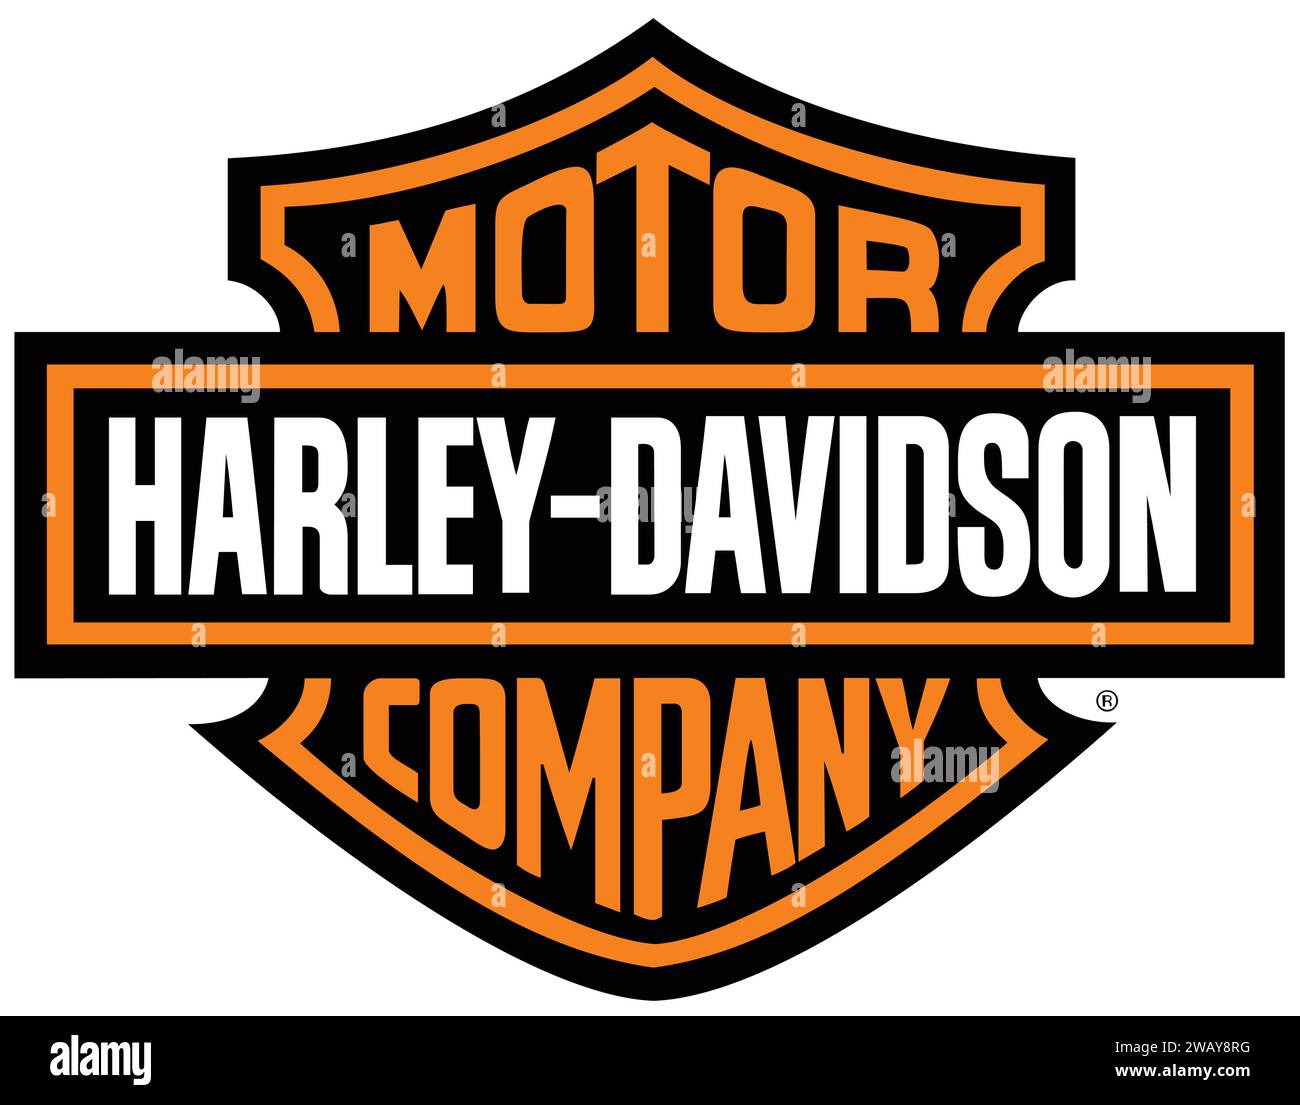 Harley Davidsons Logo oder -Symbol | Automobil-Markenlogo | Harley Davidsons Motorräder Stock Vektor